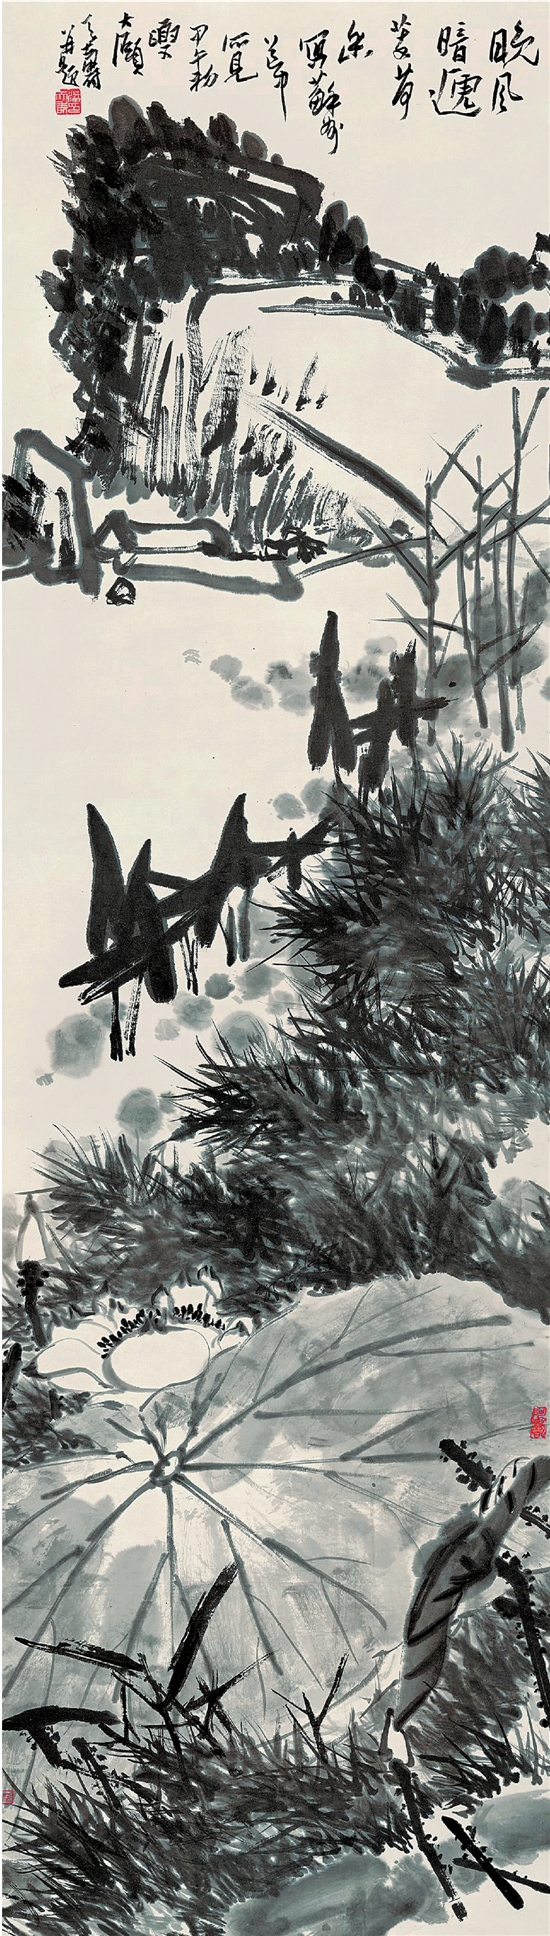   ▶潘天寿 晚风荷香图轴 150×42.7cm 1954年